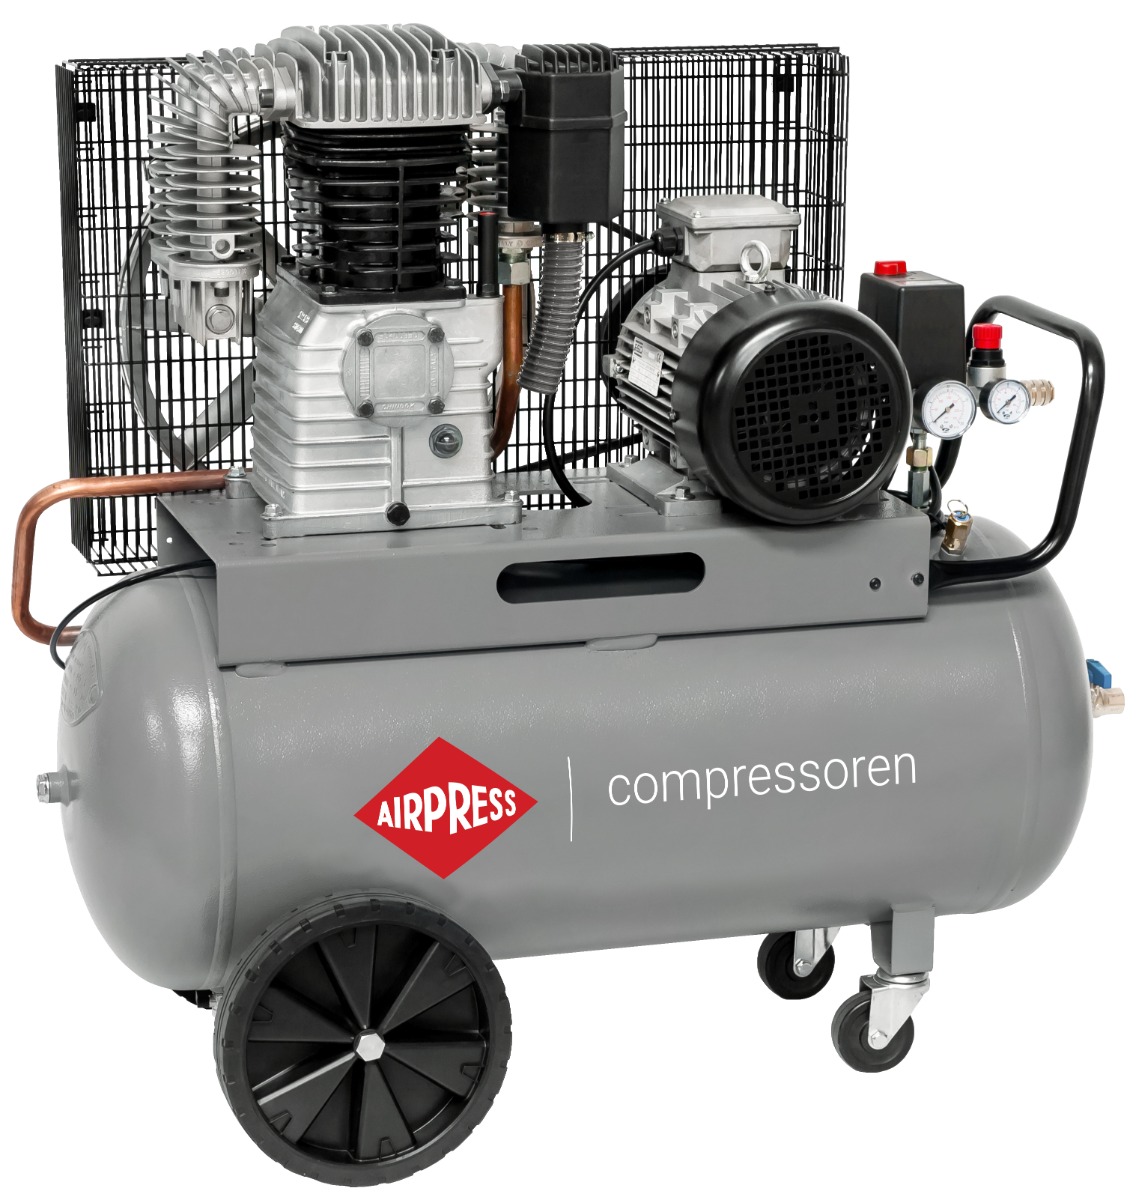 HK 700-90 Pro compressor